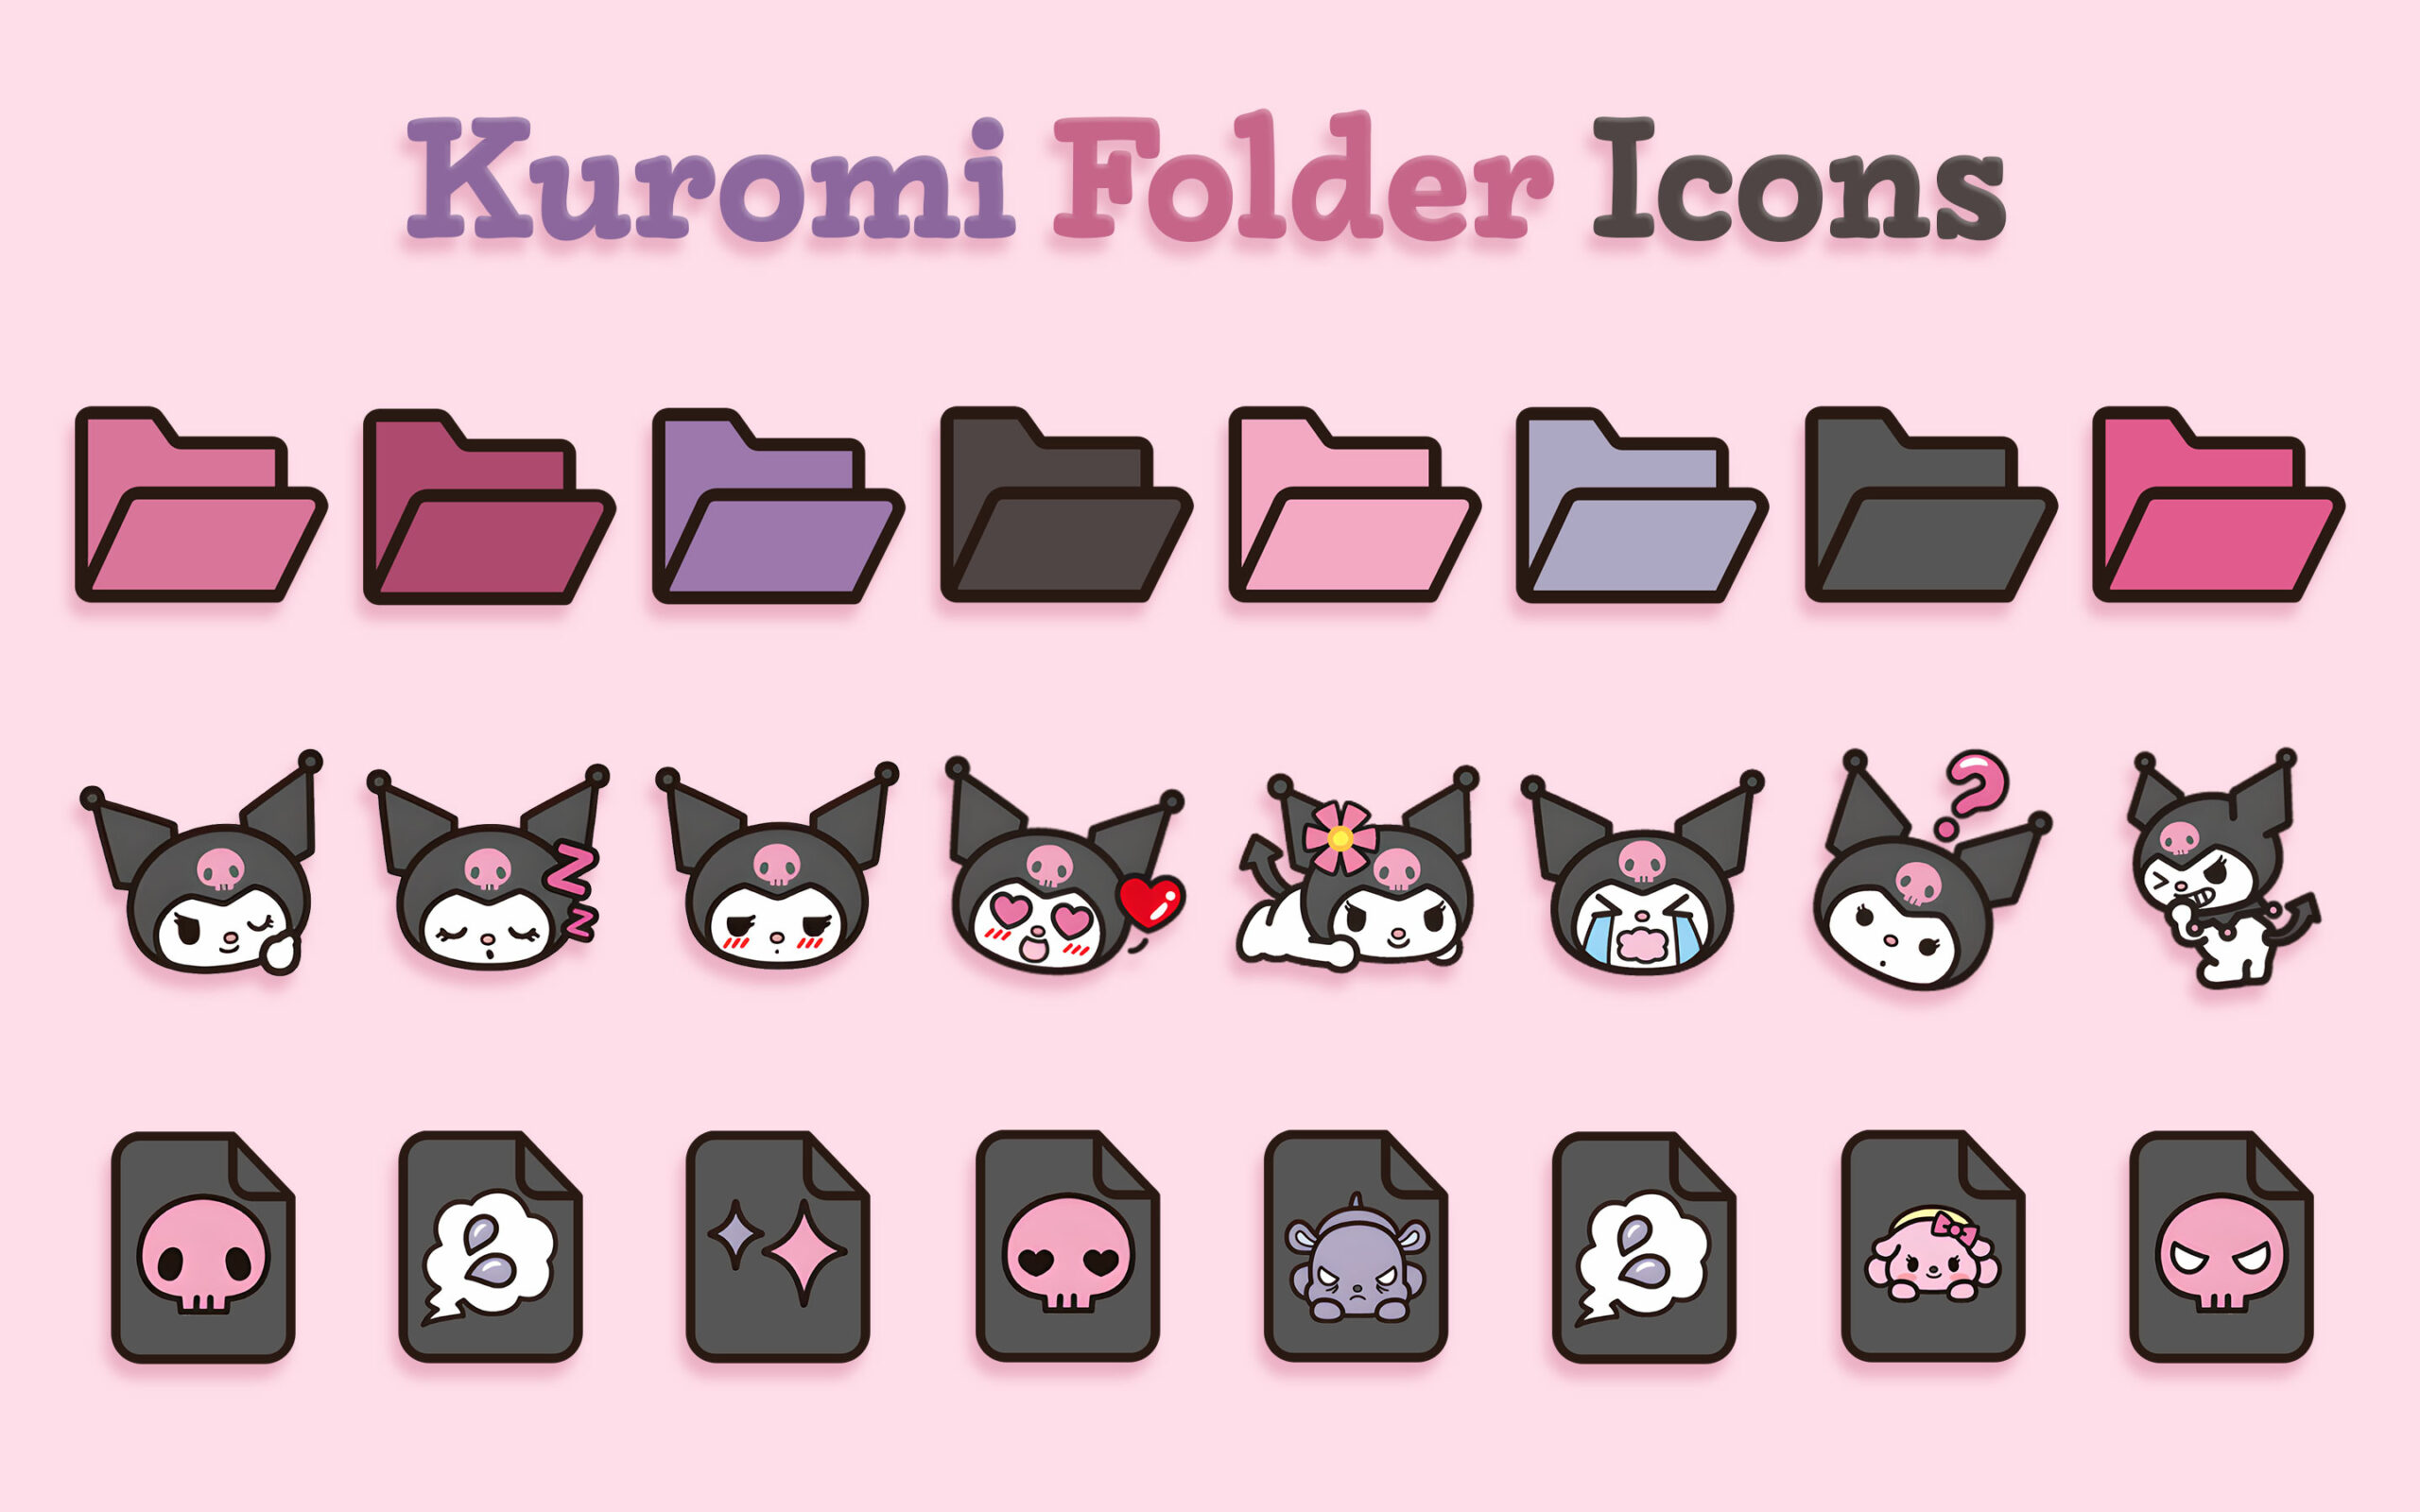 kuromi folder icons 1